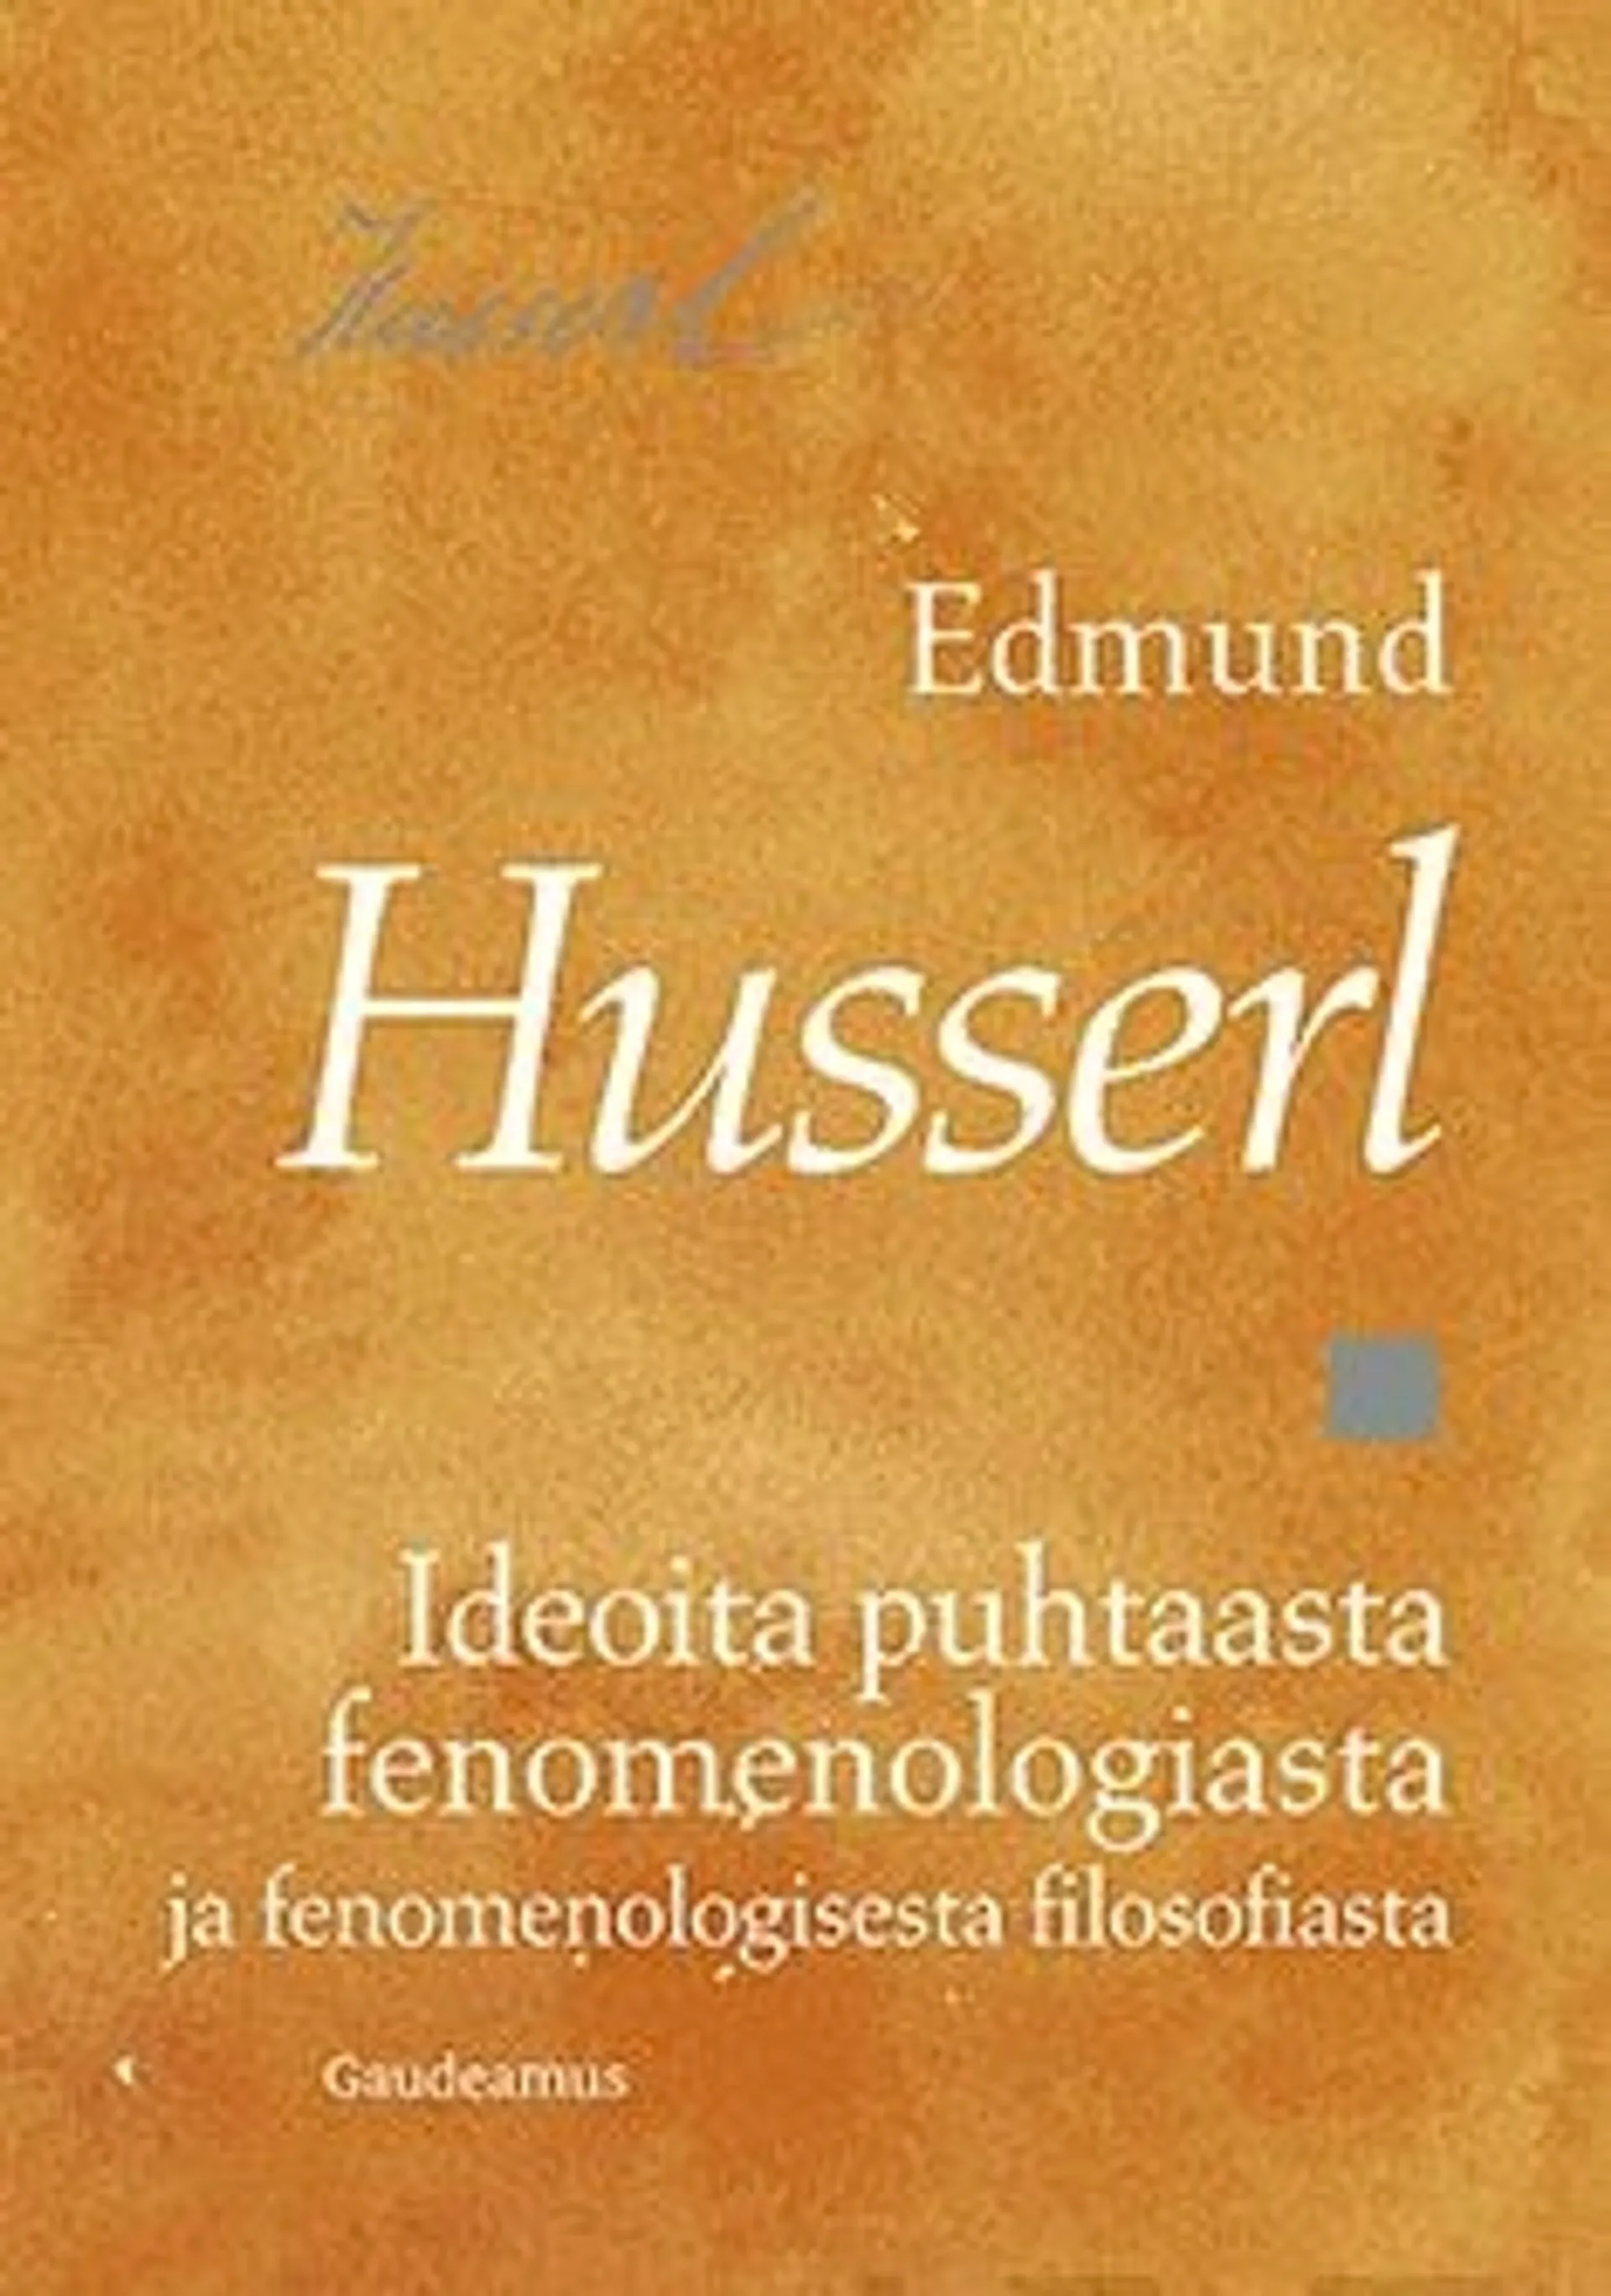 Husserl, Ideoita puhtaasta fenomenologiasta ja fenomenologisesta filosofiasta